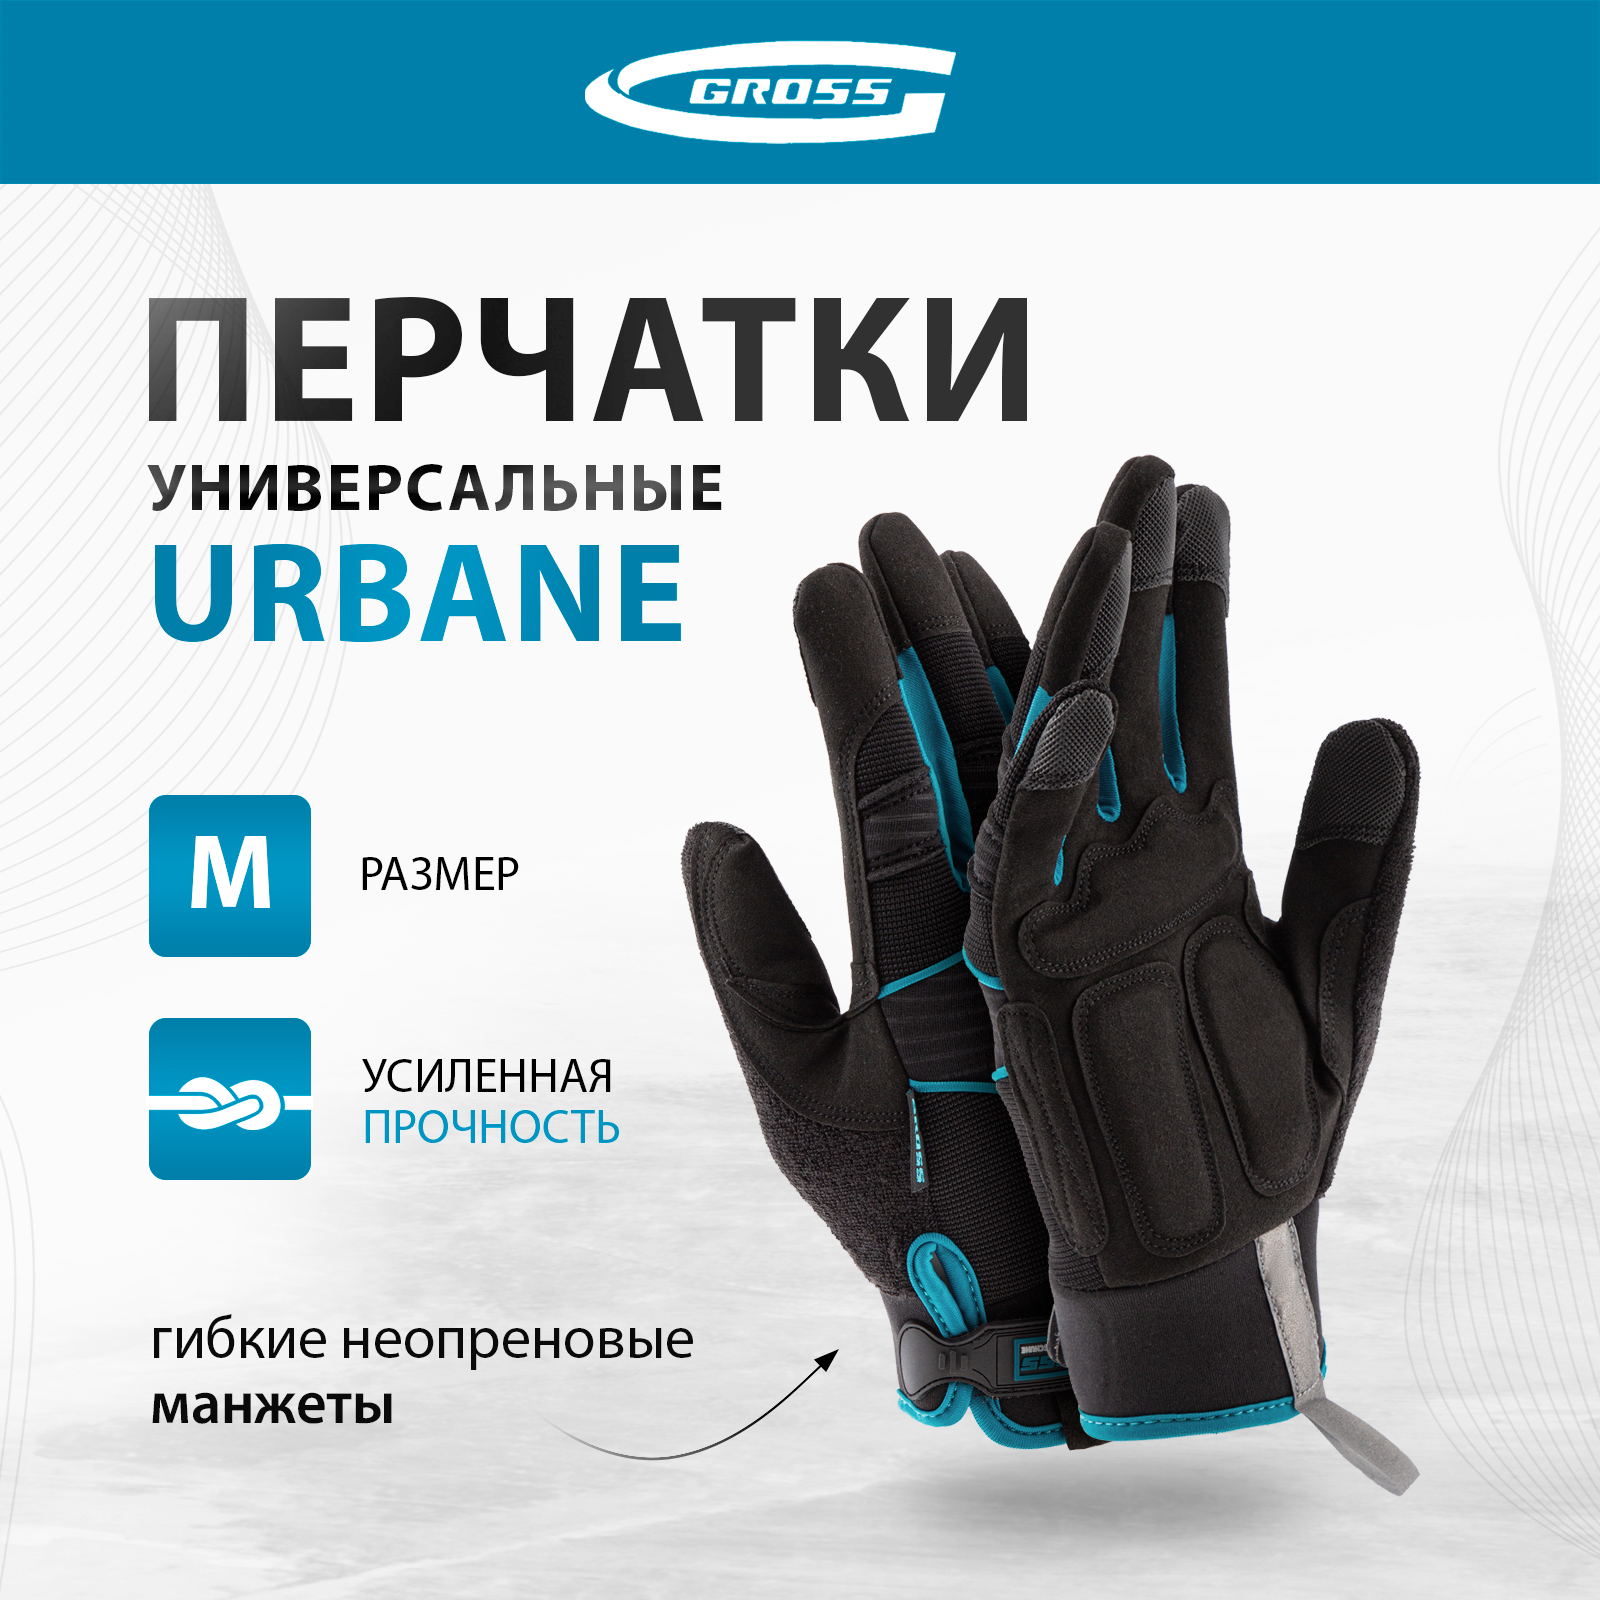 Перчатки универсальные комбинированные GROSS URBANE размер M (8) 90311 перчатки универсальные комбинированные gross stylish с накладками р xl 10 90320